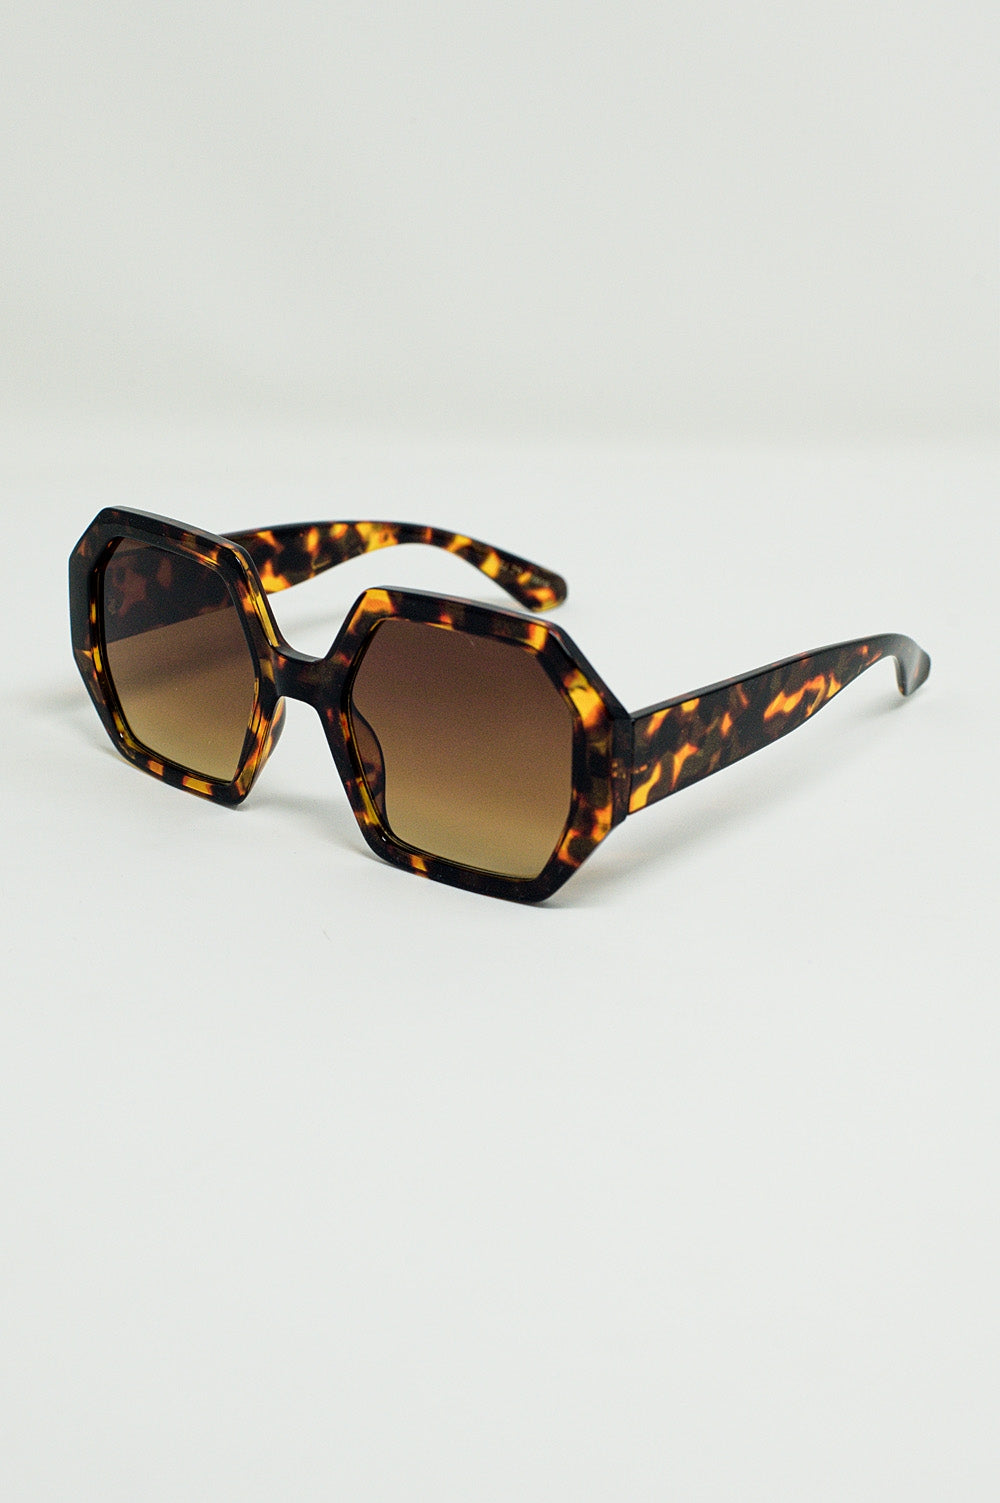 Q2 Hexagonal Oversized Sunglasses In Dark Tortoiseshell